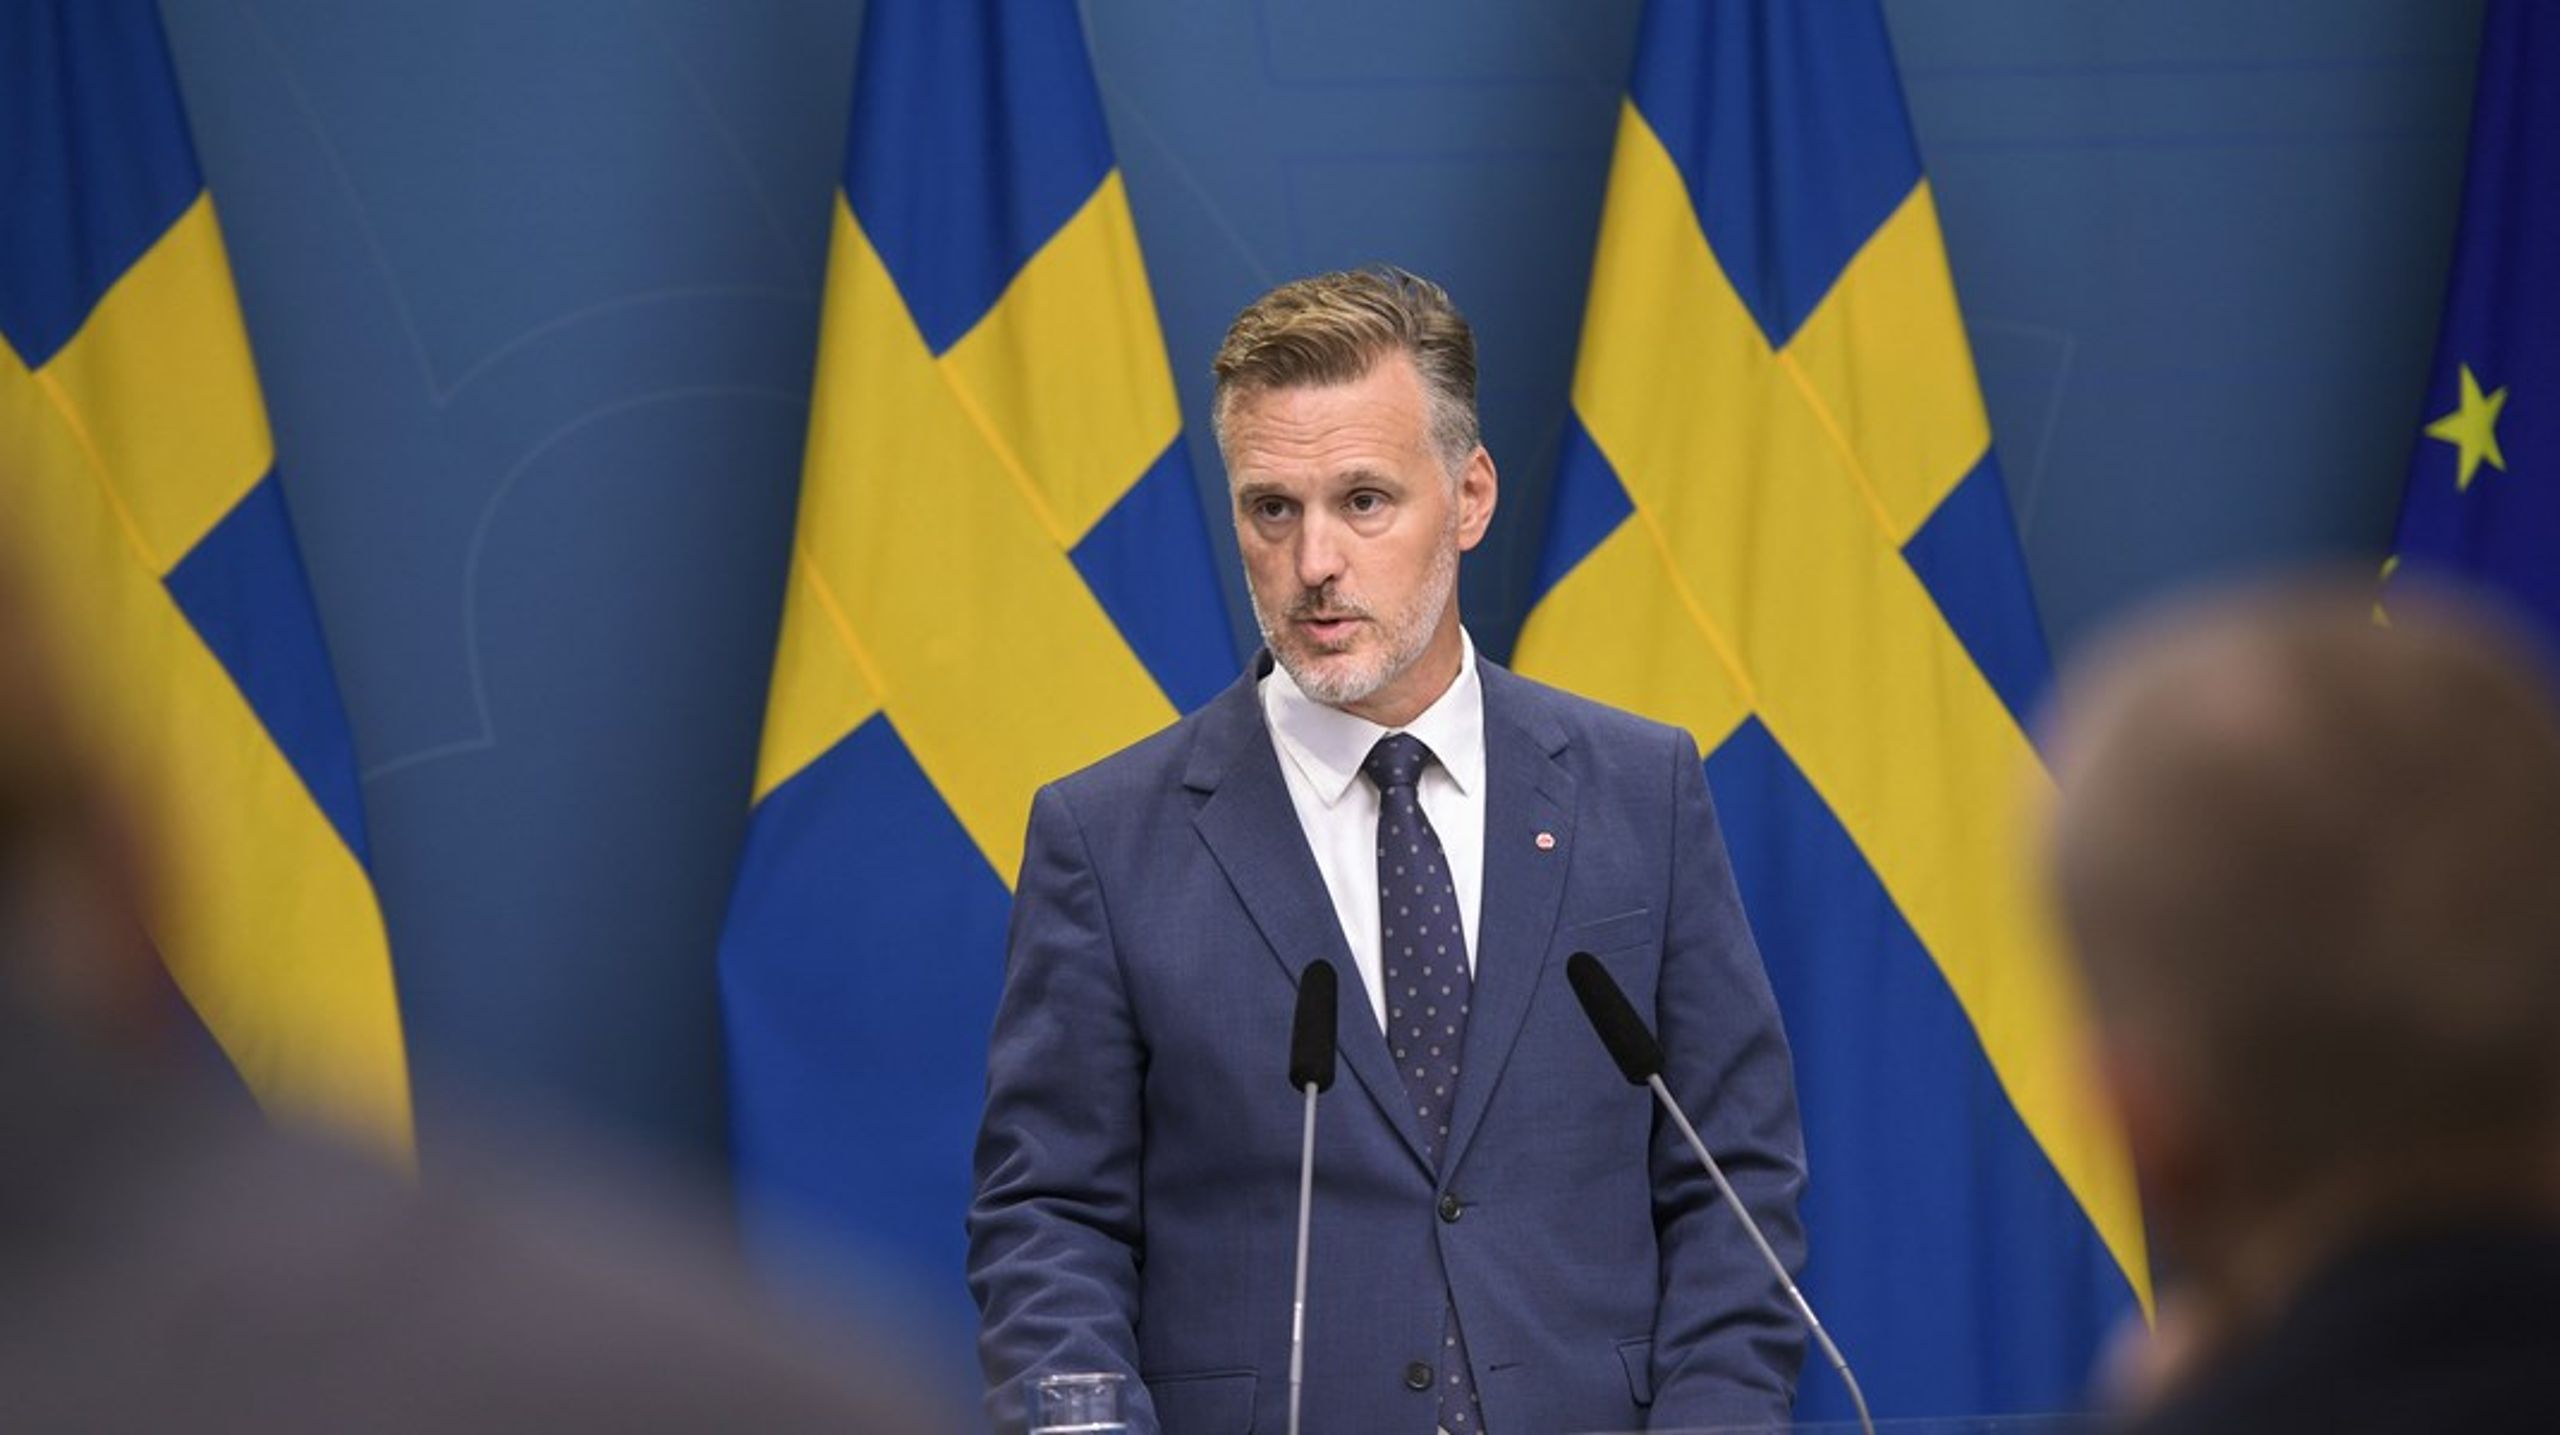 Finansmarknadsminister Max Elger (S) presenterade under en pressträff&nbsp;en ny utredning om effekter av ränteförändringar för svenska hushåll.&nbsp;